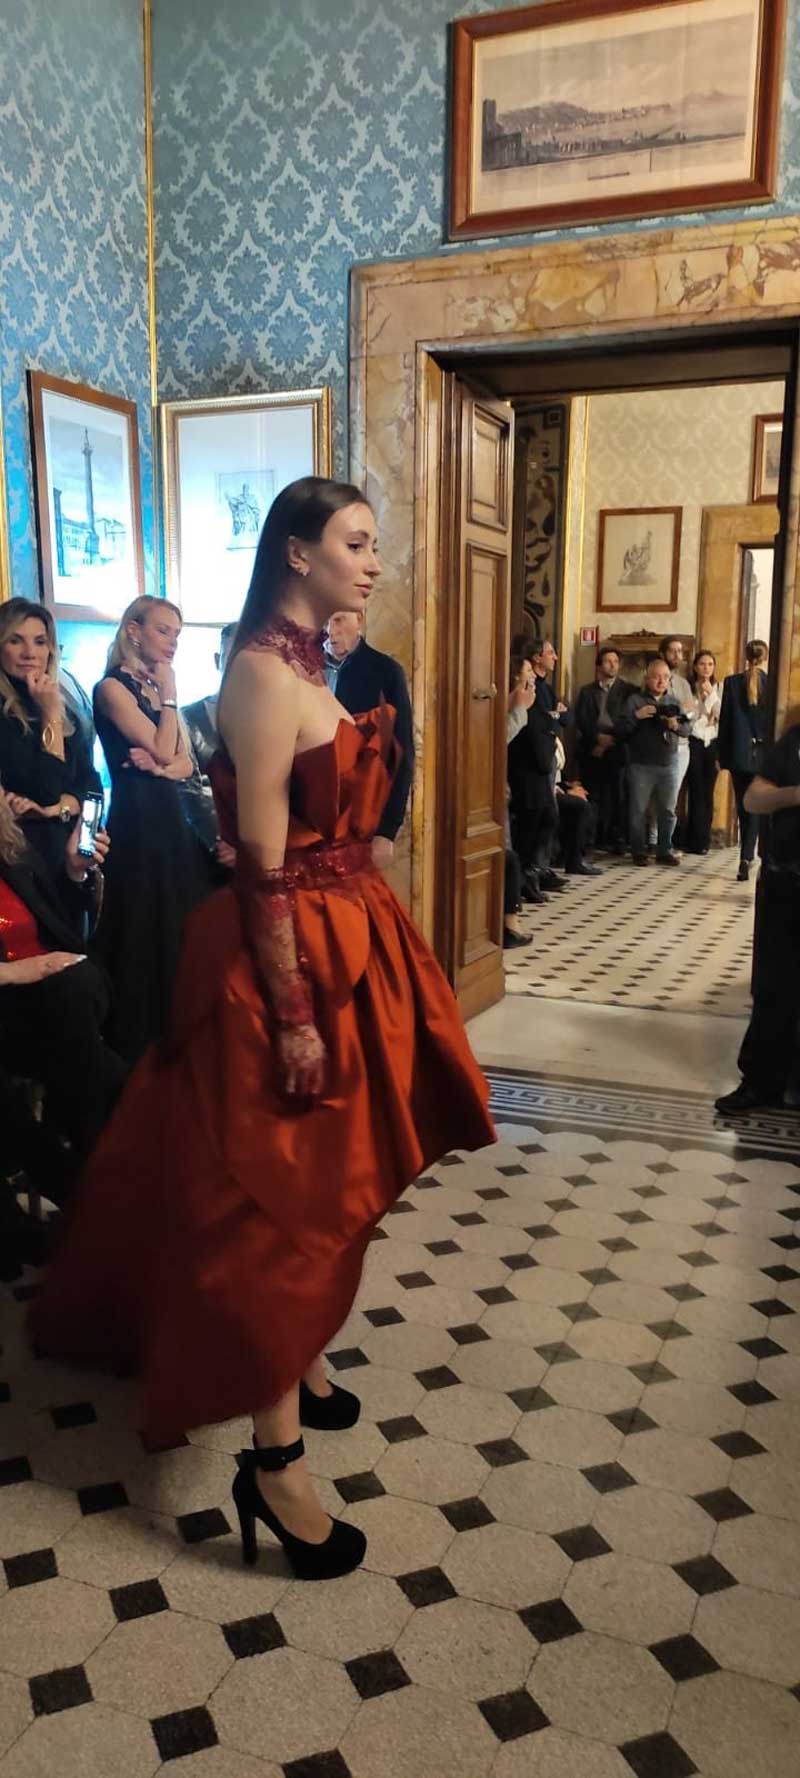 Mod’Art Roma - Il fascino dei colori - sfilata modelle nello storico Palazzo Ferrajoli - evento d’alta moda con gli eleganti abiti di Elins moda